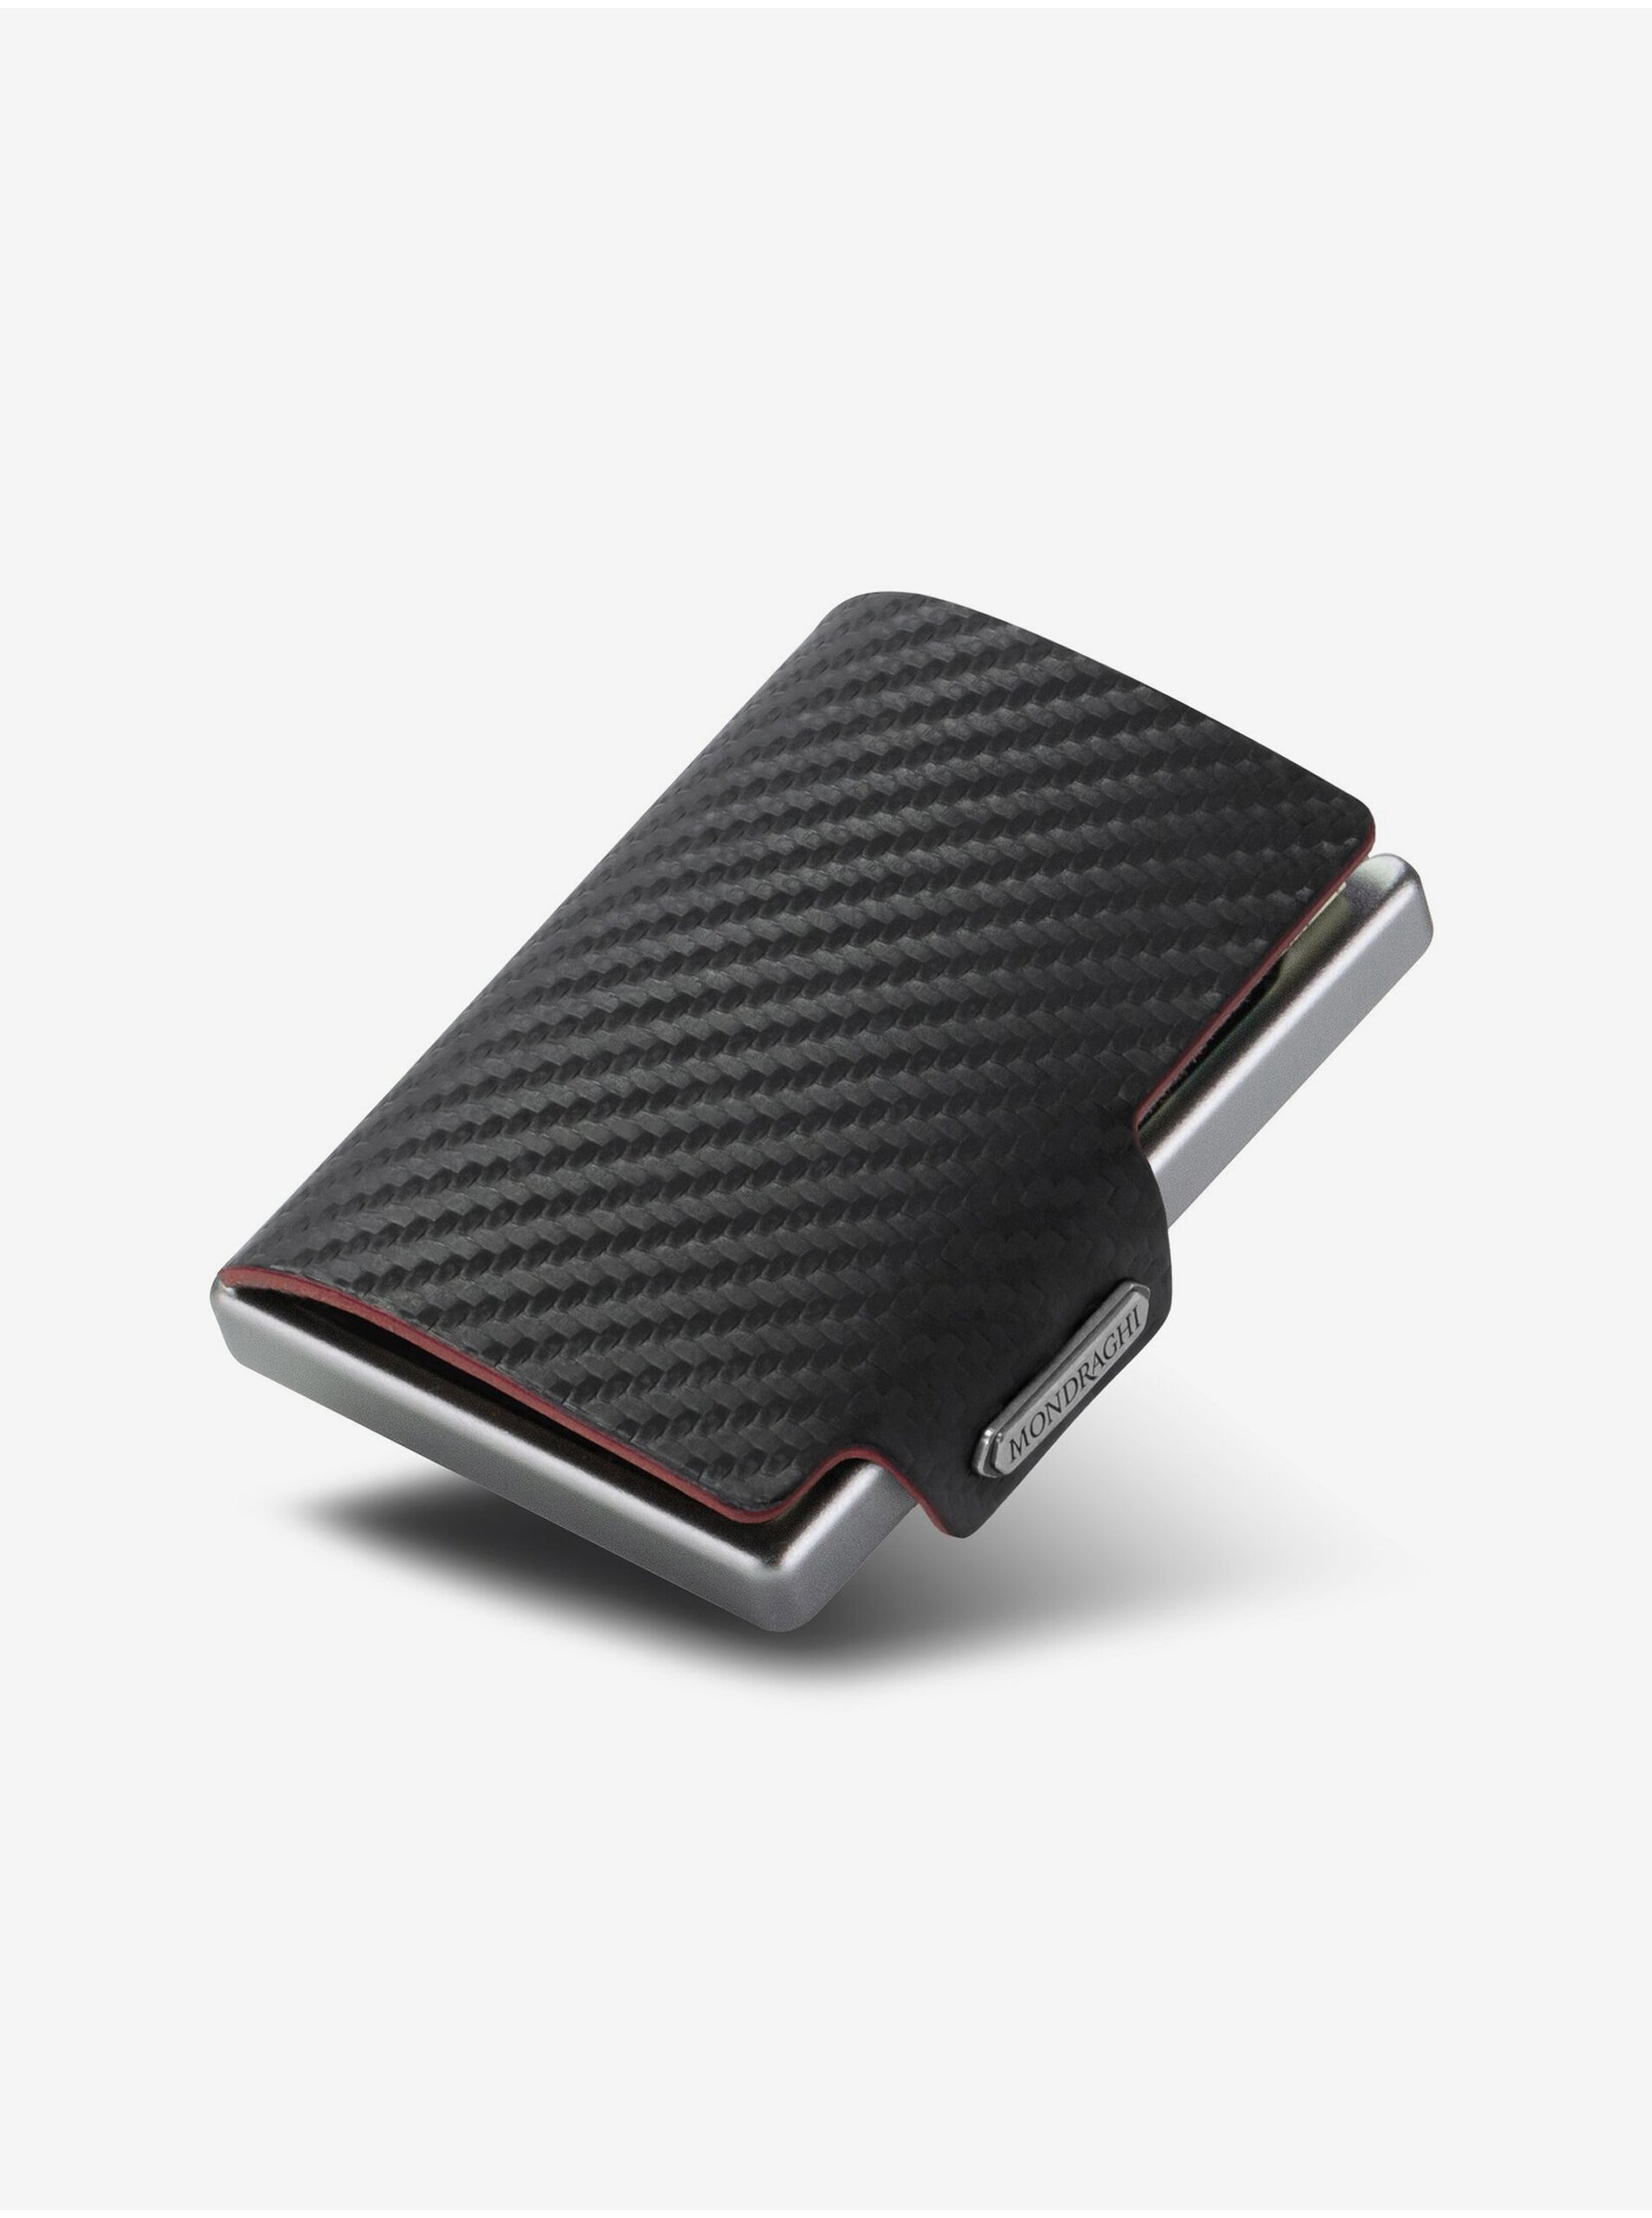 E-shop Čierna vzorovaná kožená peňaženka Mondraghi Carbon Plus